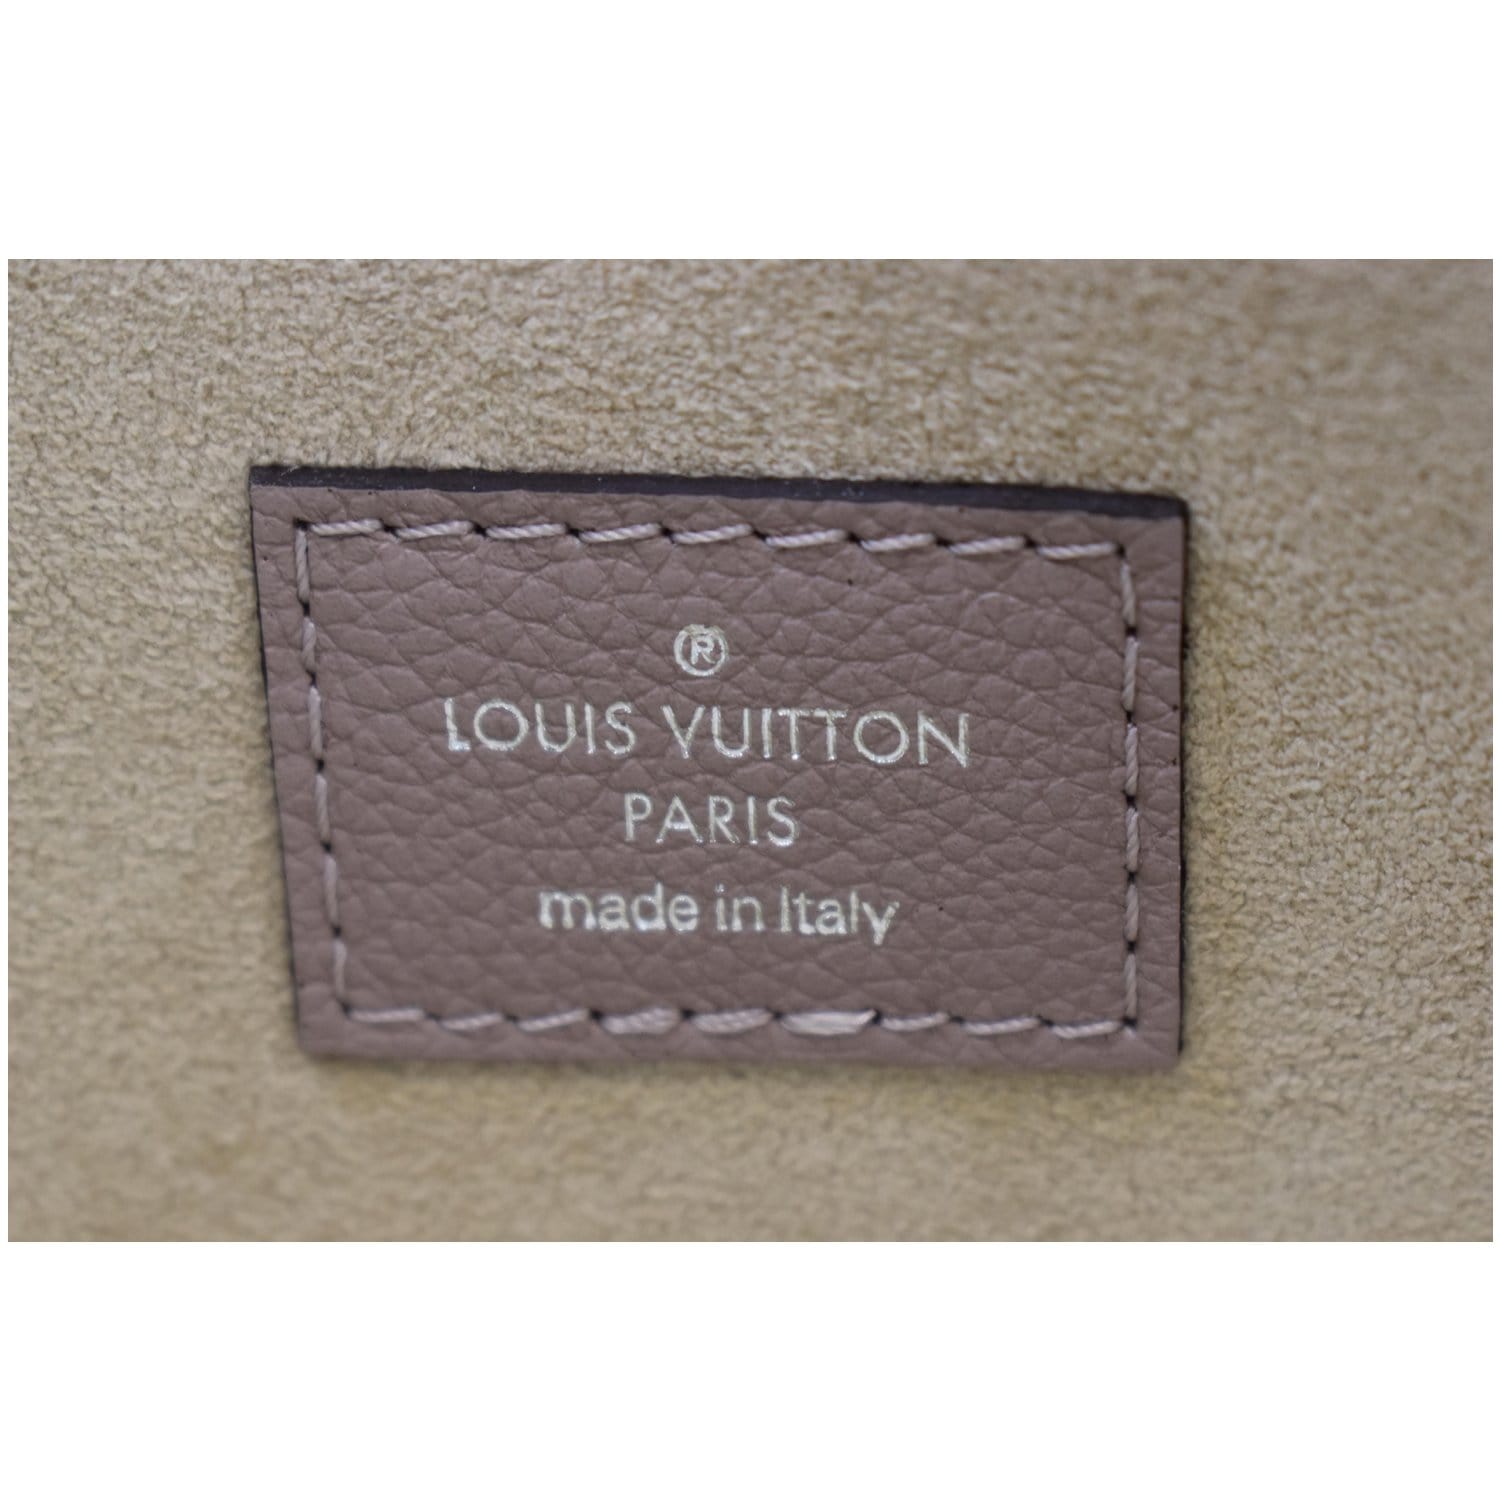 Défilé Louis Vuitton Printemps-été 2013 Prêt-à-porter